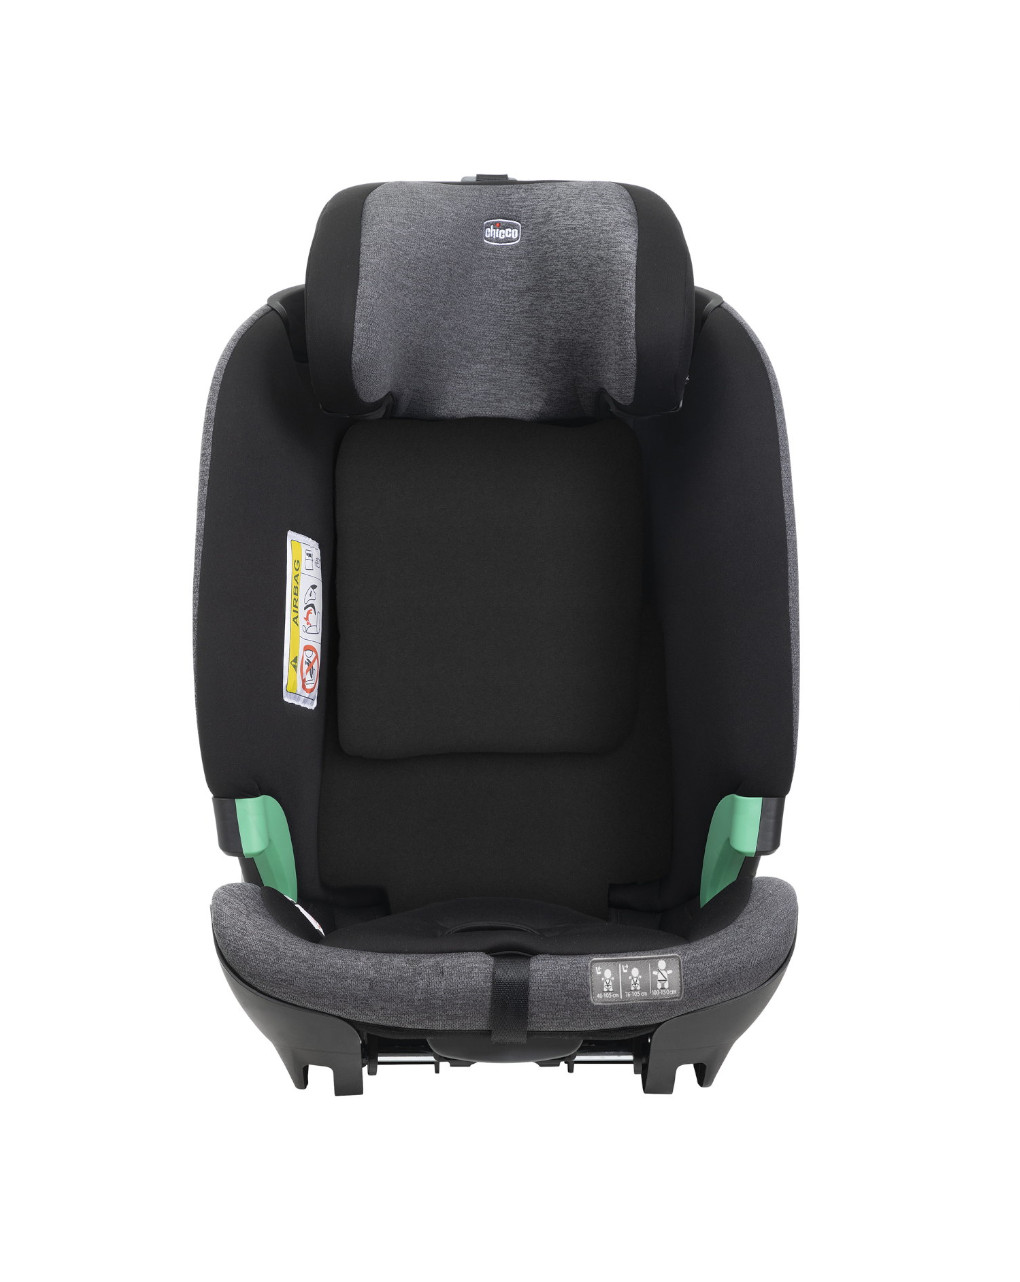 Seggiolino auto bi-seat i-size black (61-150 cm) - chicco - Chicco